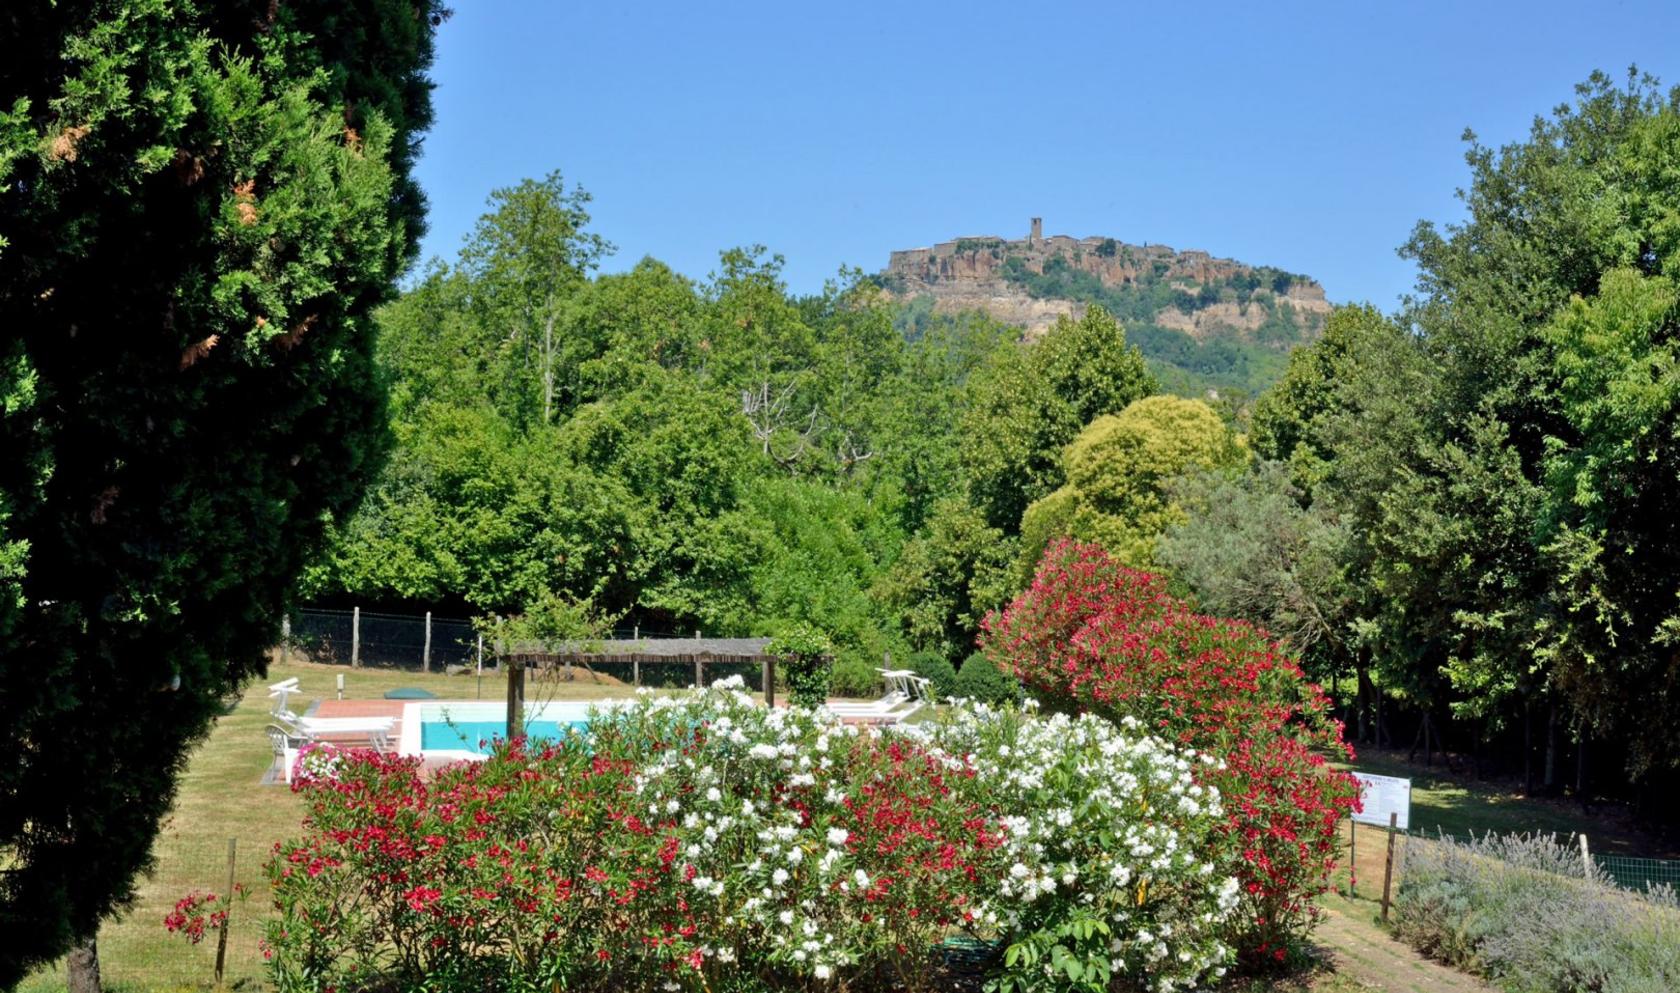 Toscana Immobiliare - garden and swimming pool of the house in Civita di Bagnoregio